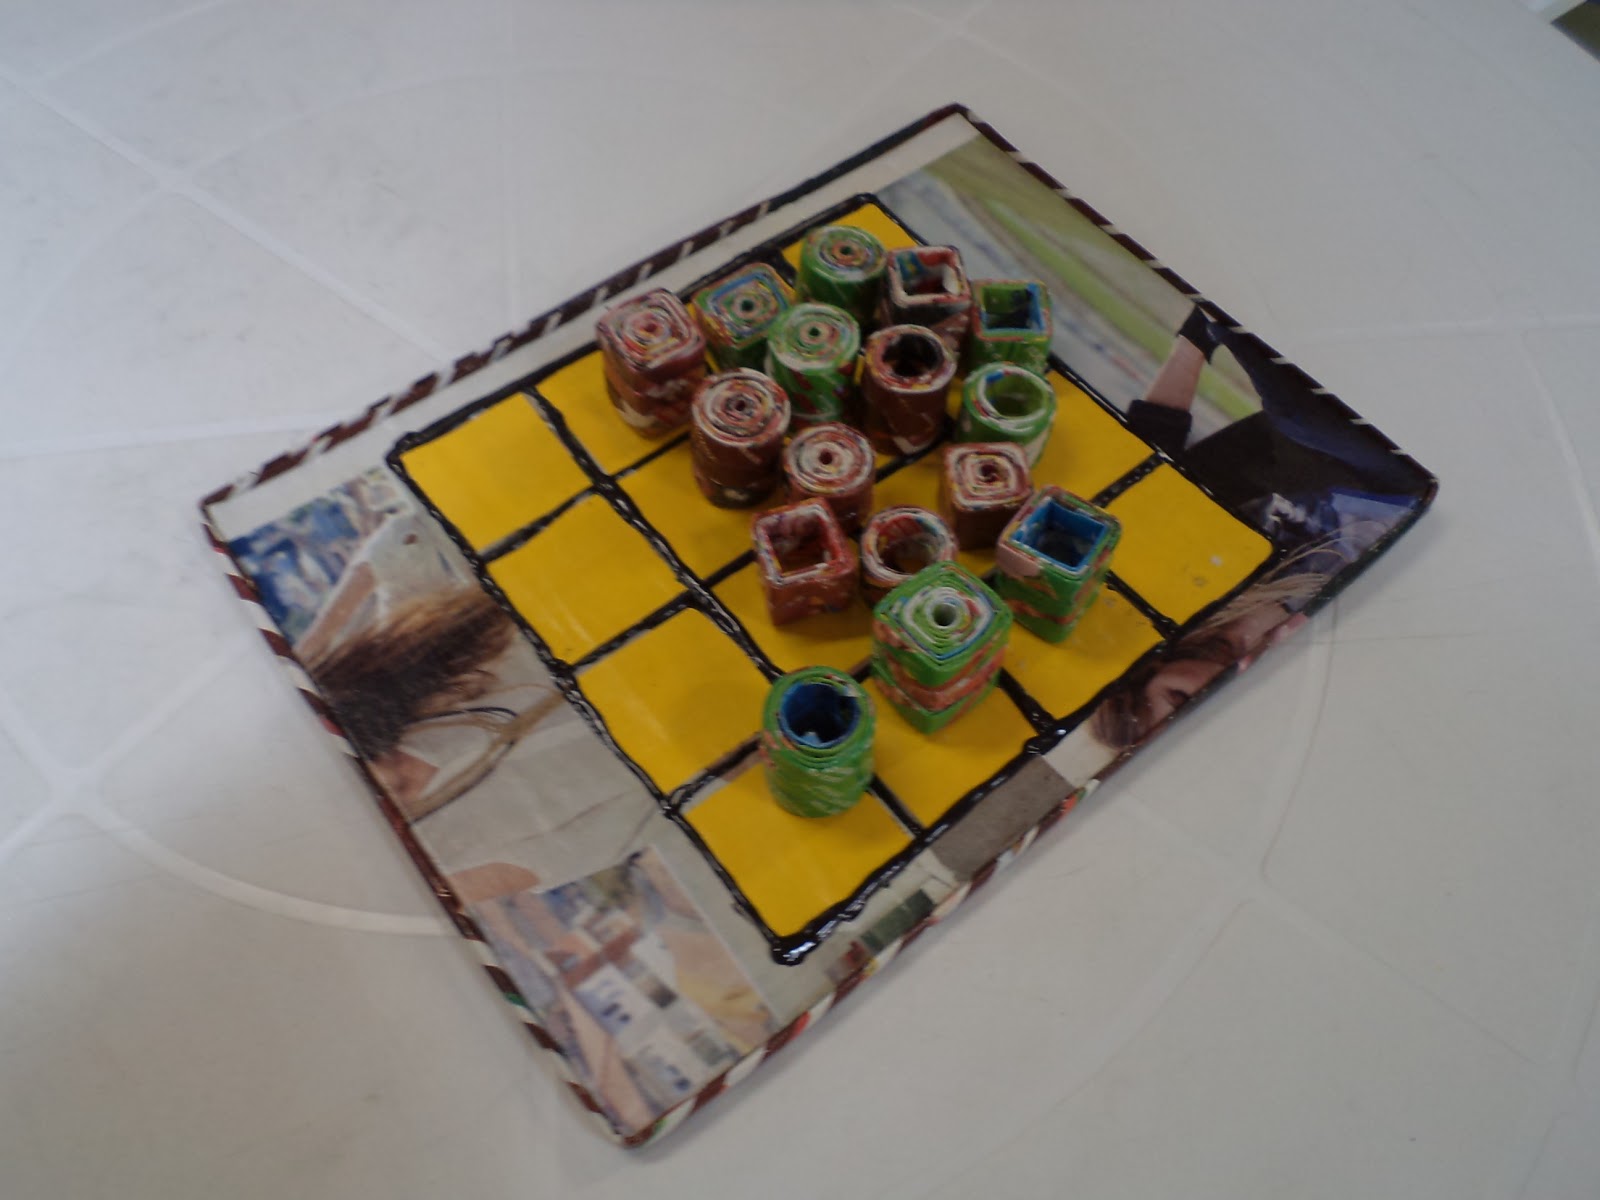 TRENCH - Jogo de estratégia português, considerado o xadrez